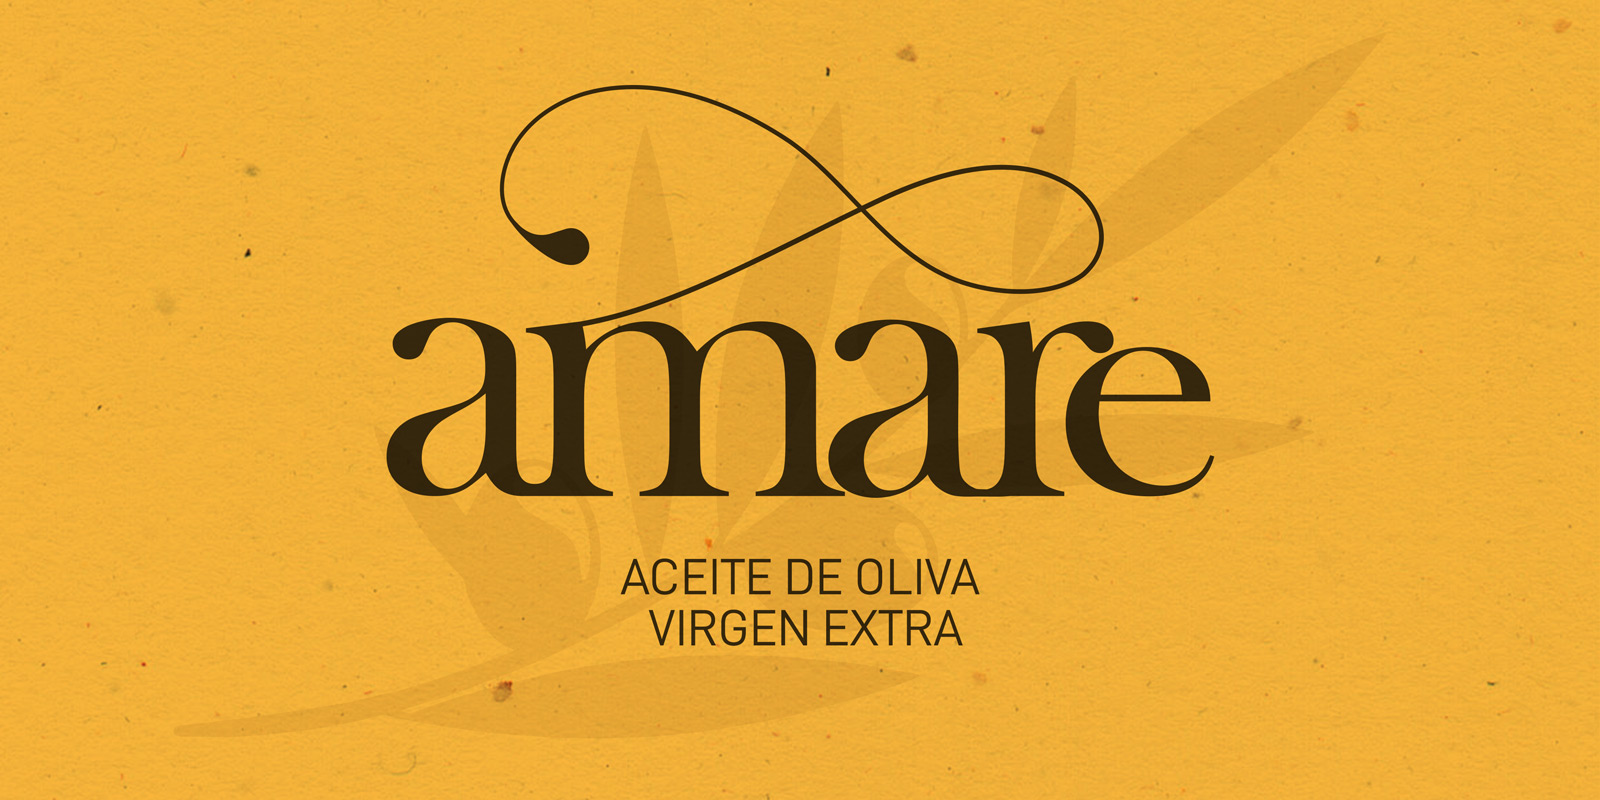 Diseño gráfico y creativo de etiquetas de aceite de oliva virgen extra AMARE